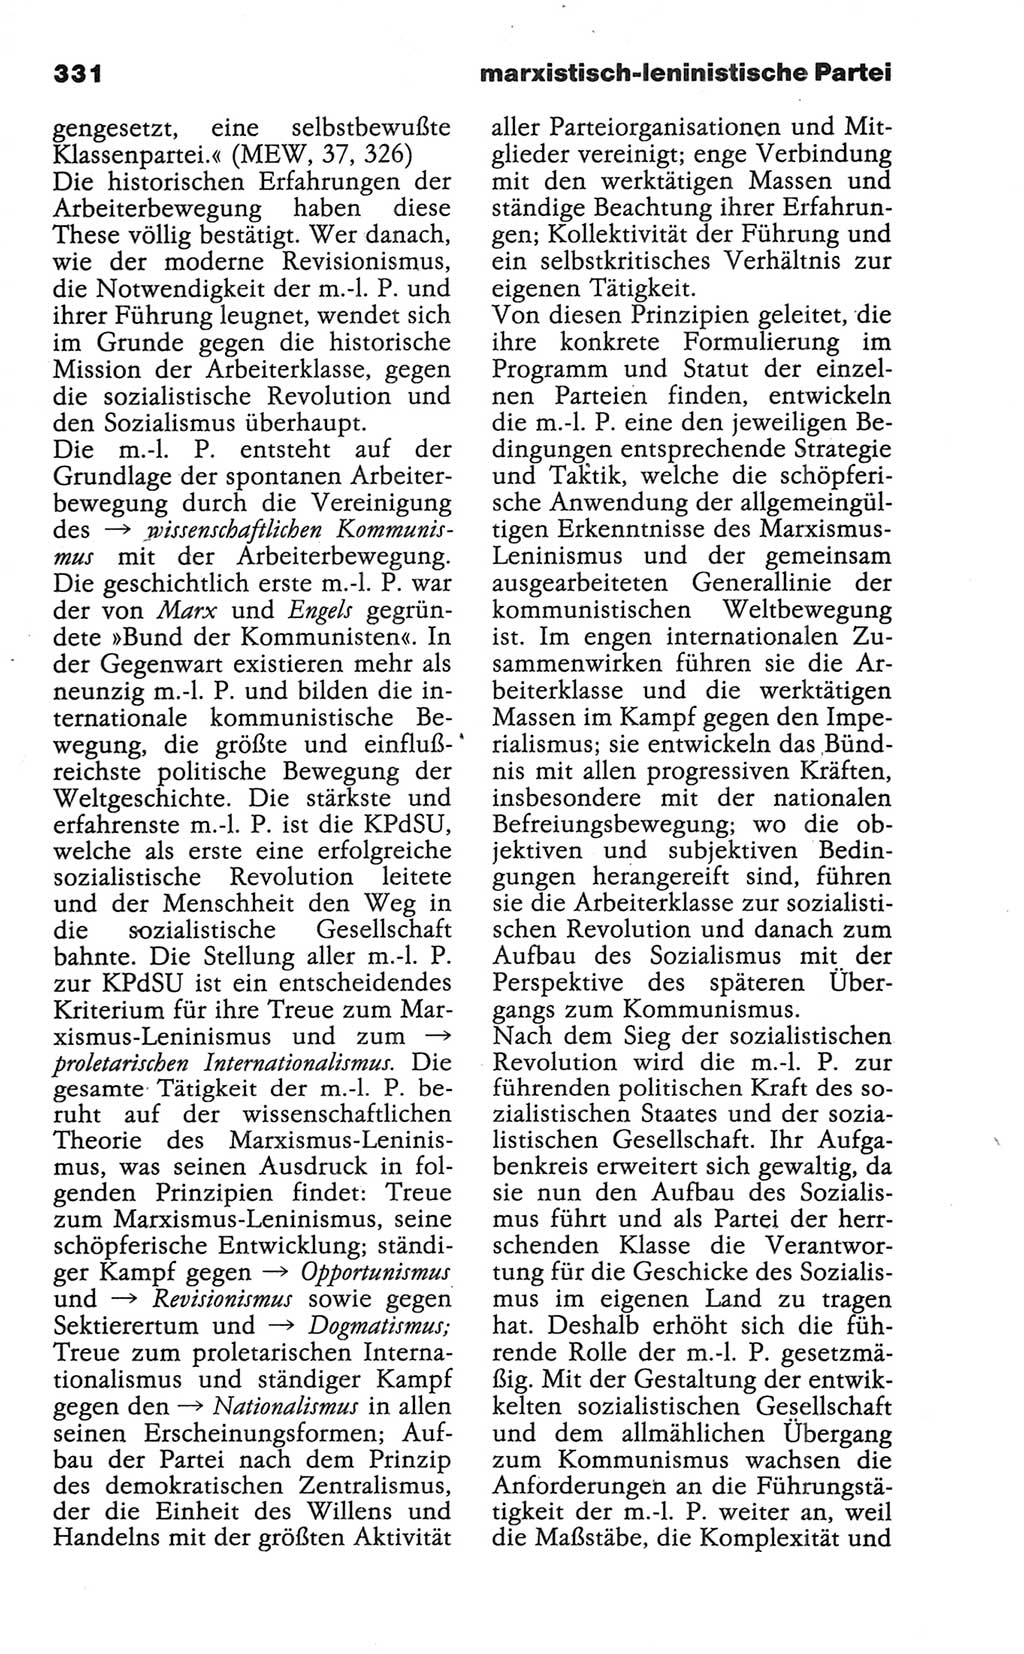 Wörterbuch der marxistisch-leninistischen Philosophie [Deutsche Demokratische Republik (DDR)] 1986, Seite 331 (Wb. ML Phil. DDR 1986, S. 331)